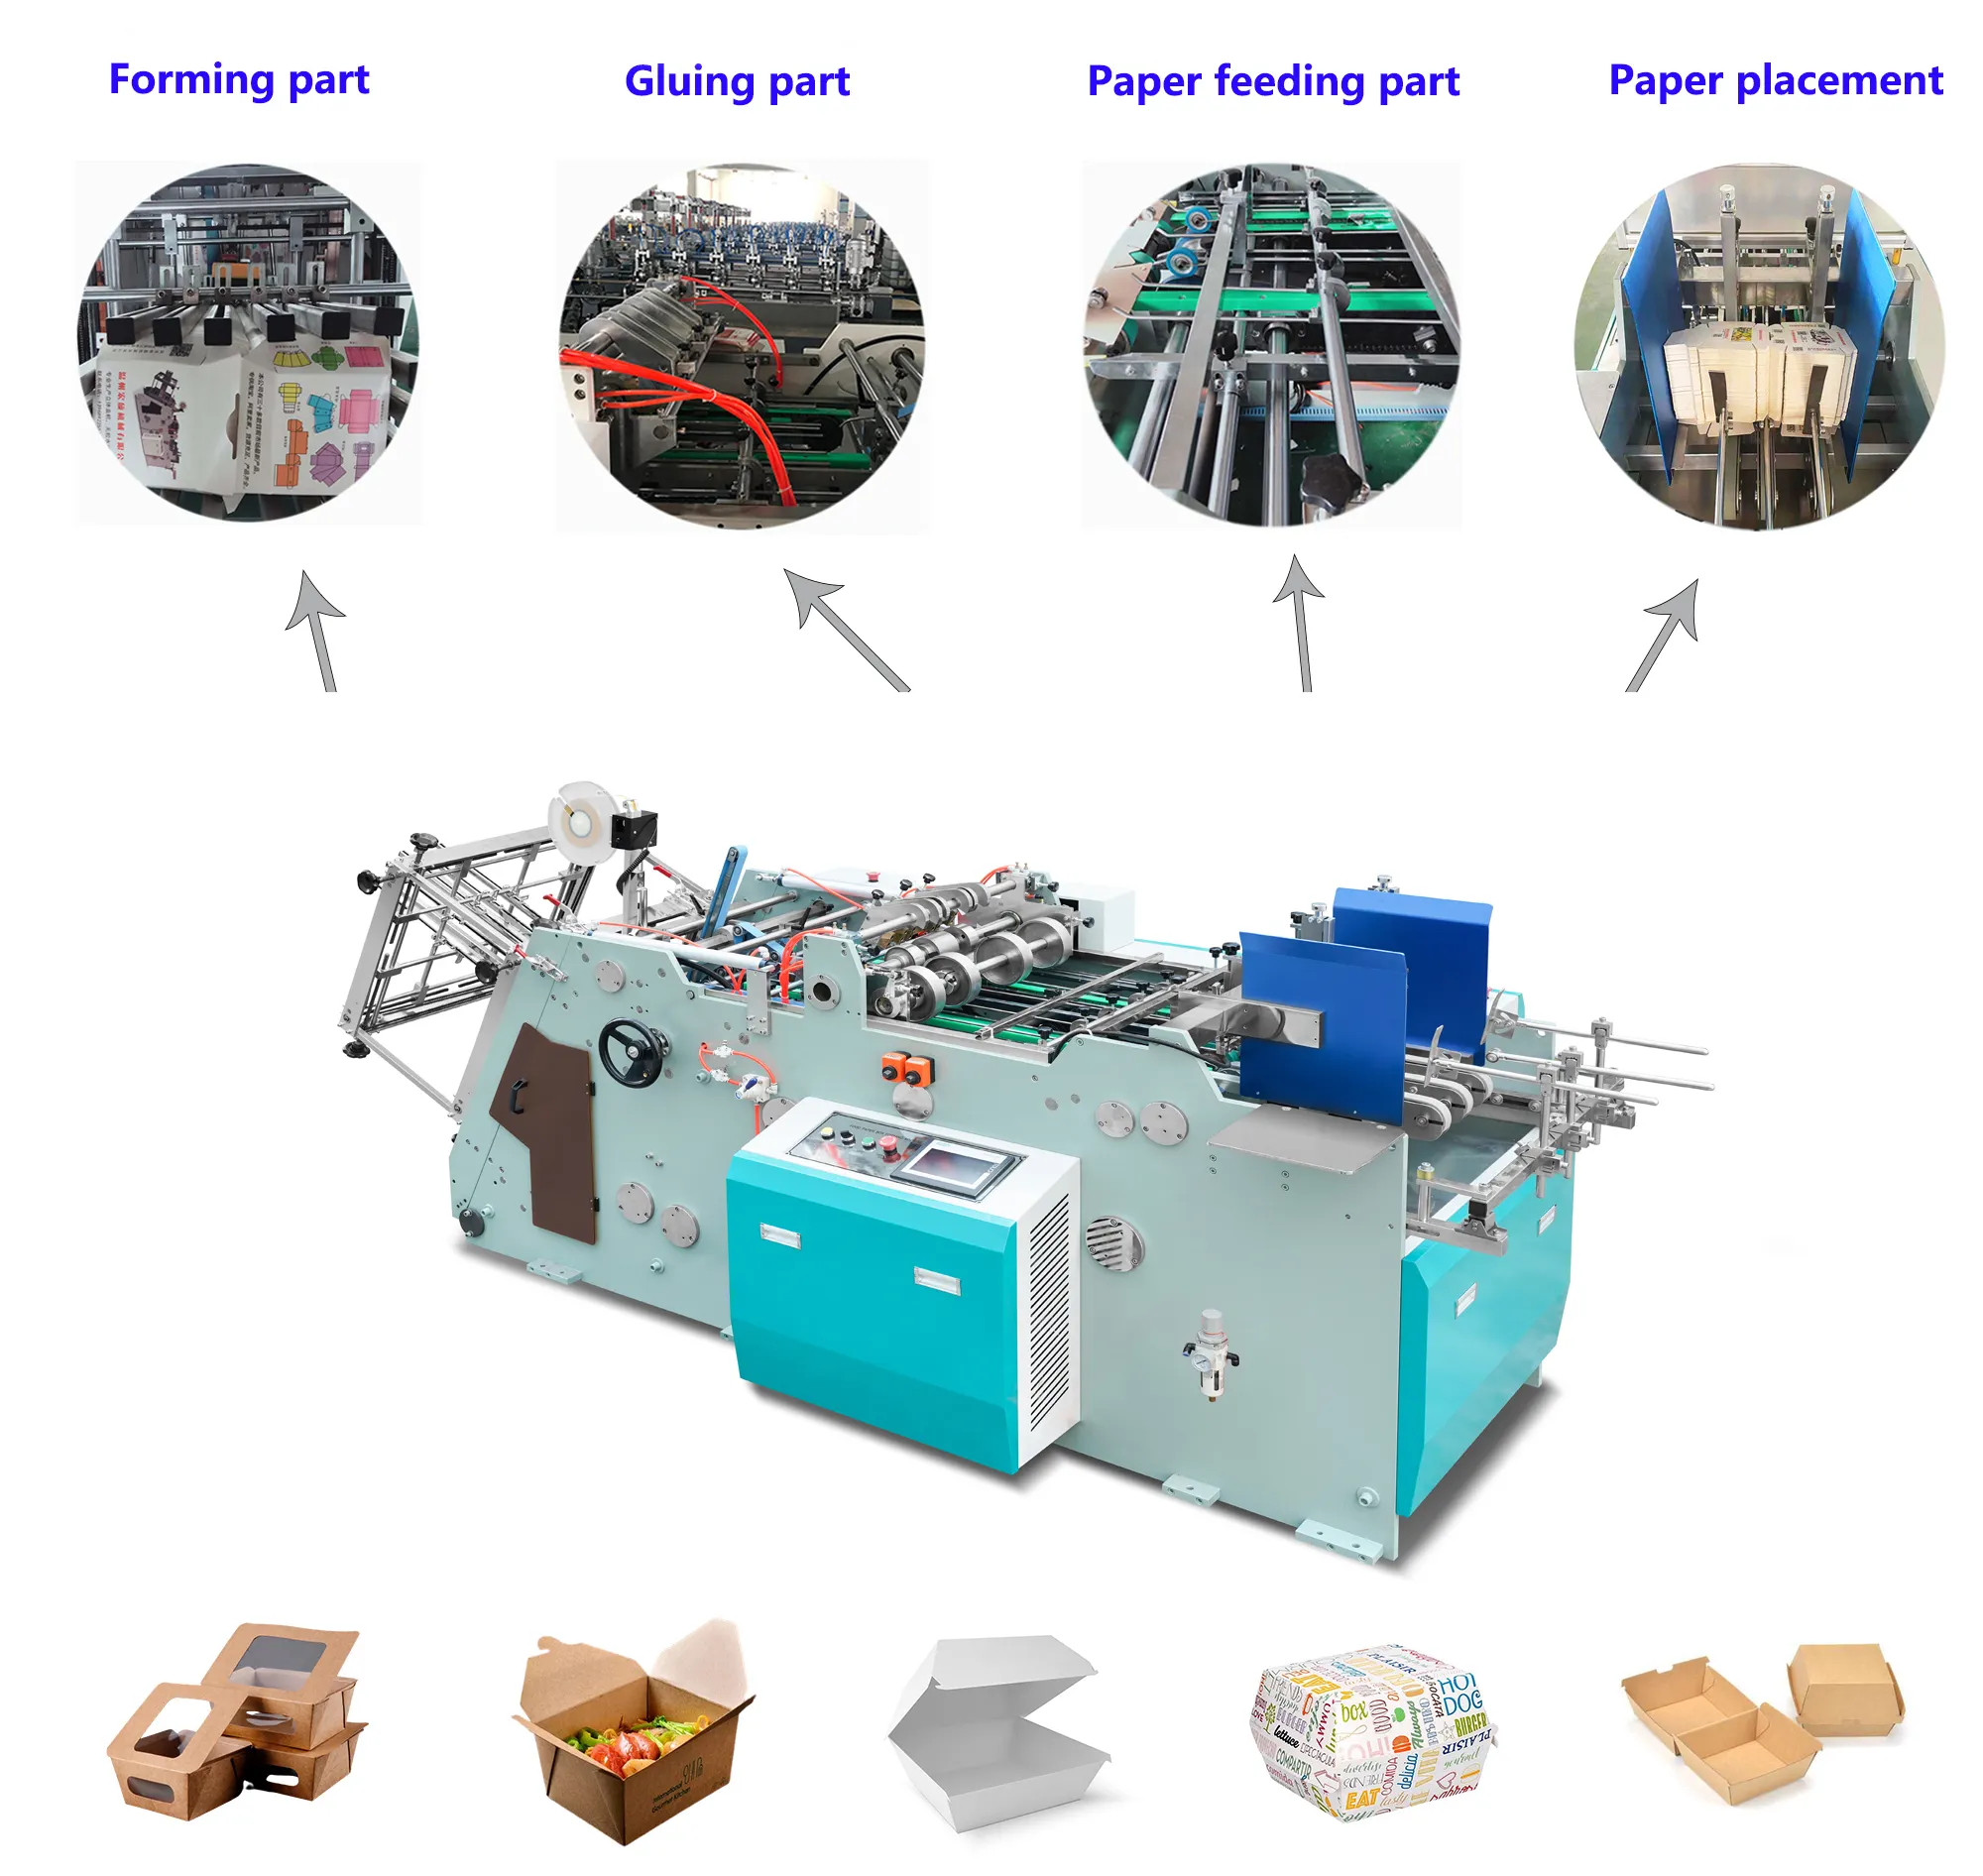 होंगशुओ एचएस-एचबीजे-800 चीन अच्छी गुणवत्ता वाली पेपर बॉक्स बनाने की मशीन का निर्माण करता है